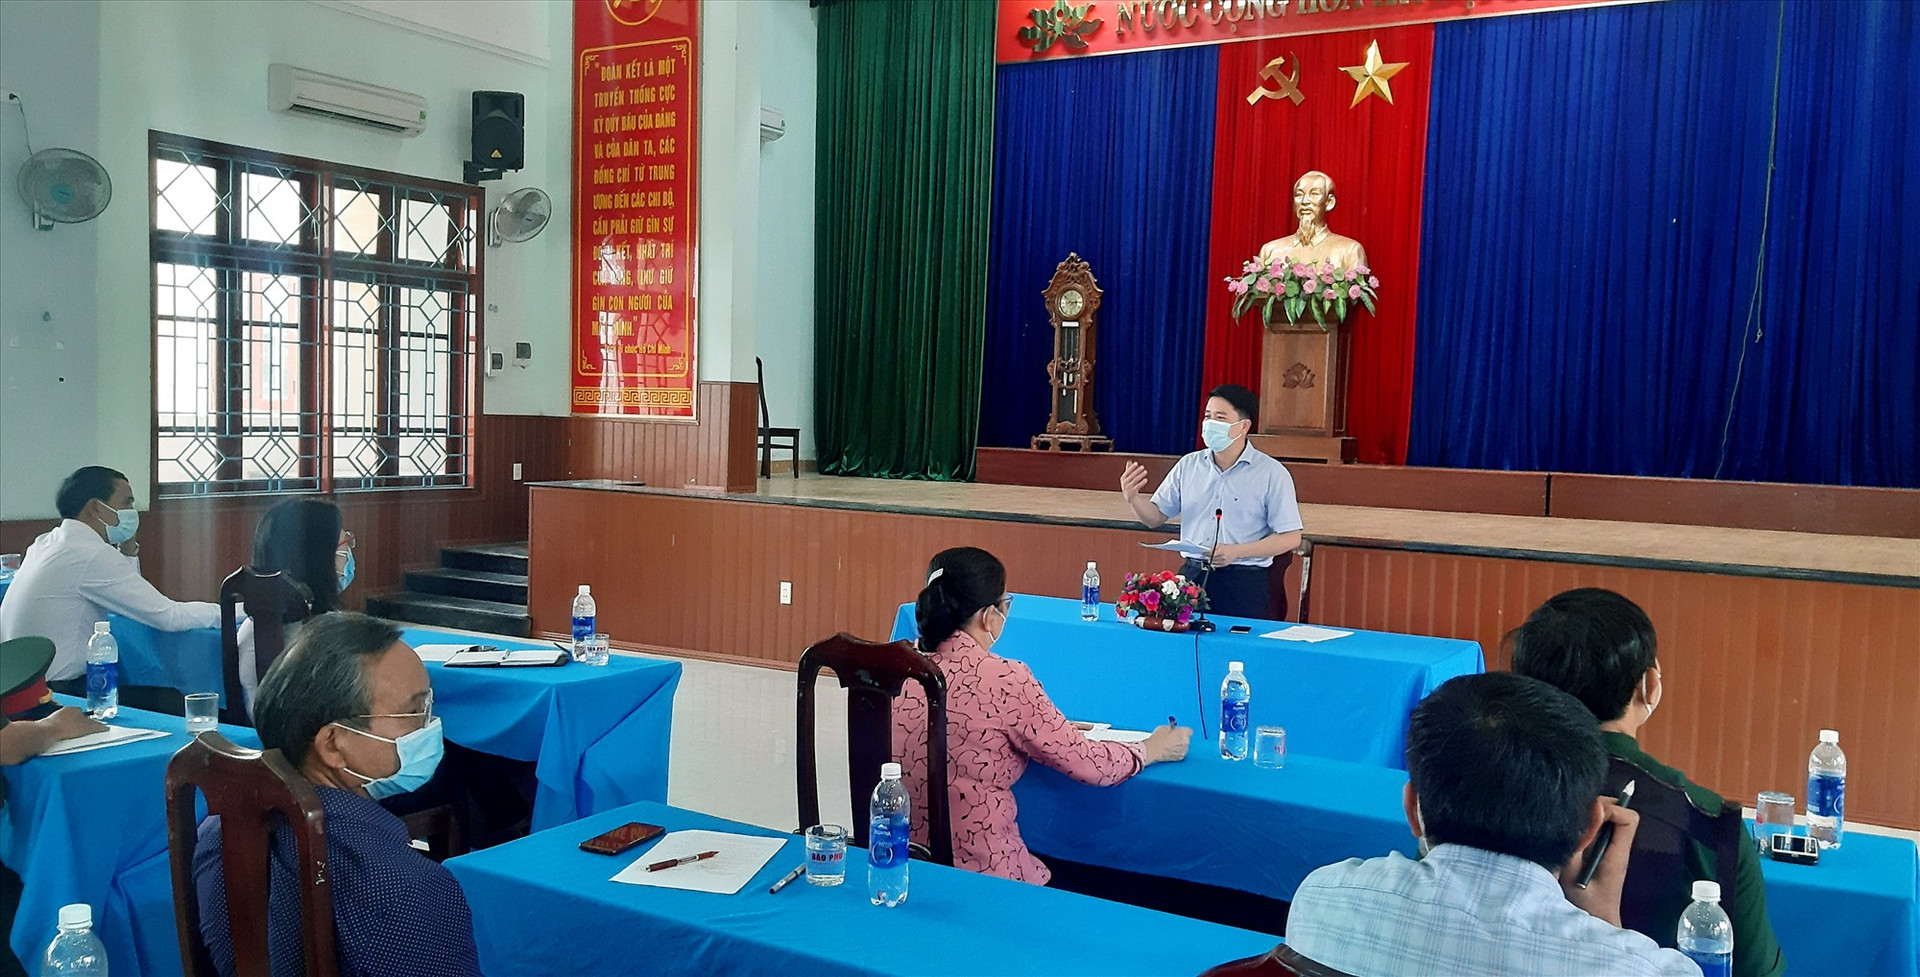 Phó Chủ tịch UBND tỉnh Trần Văn Tân phát biểu tại cuộc làm việc với các ngành liên quan và lãnh đạo huyện Quế Sơn.   Ảnh: VĂN SỰ